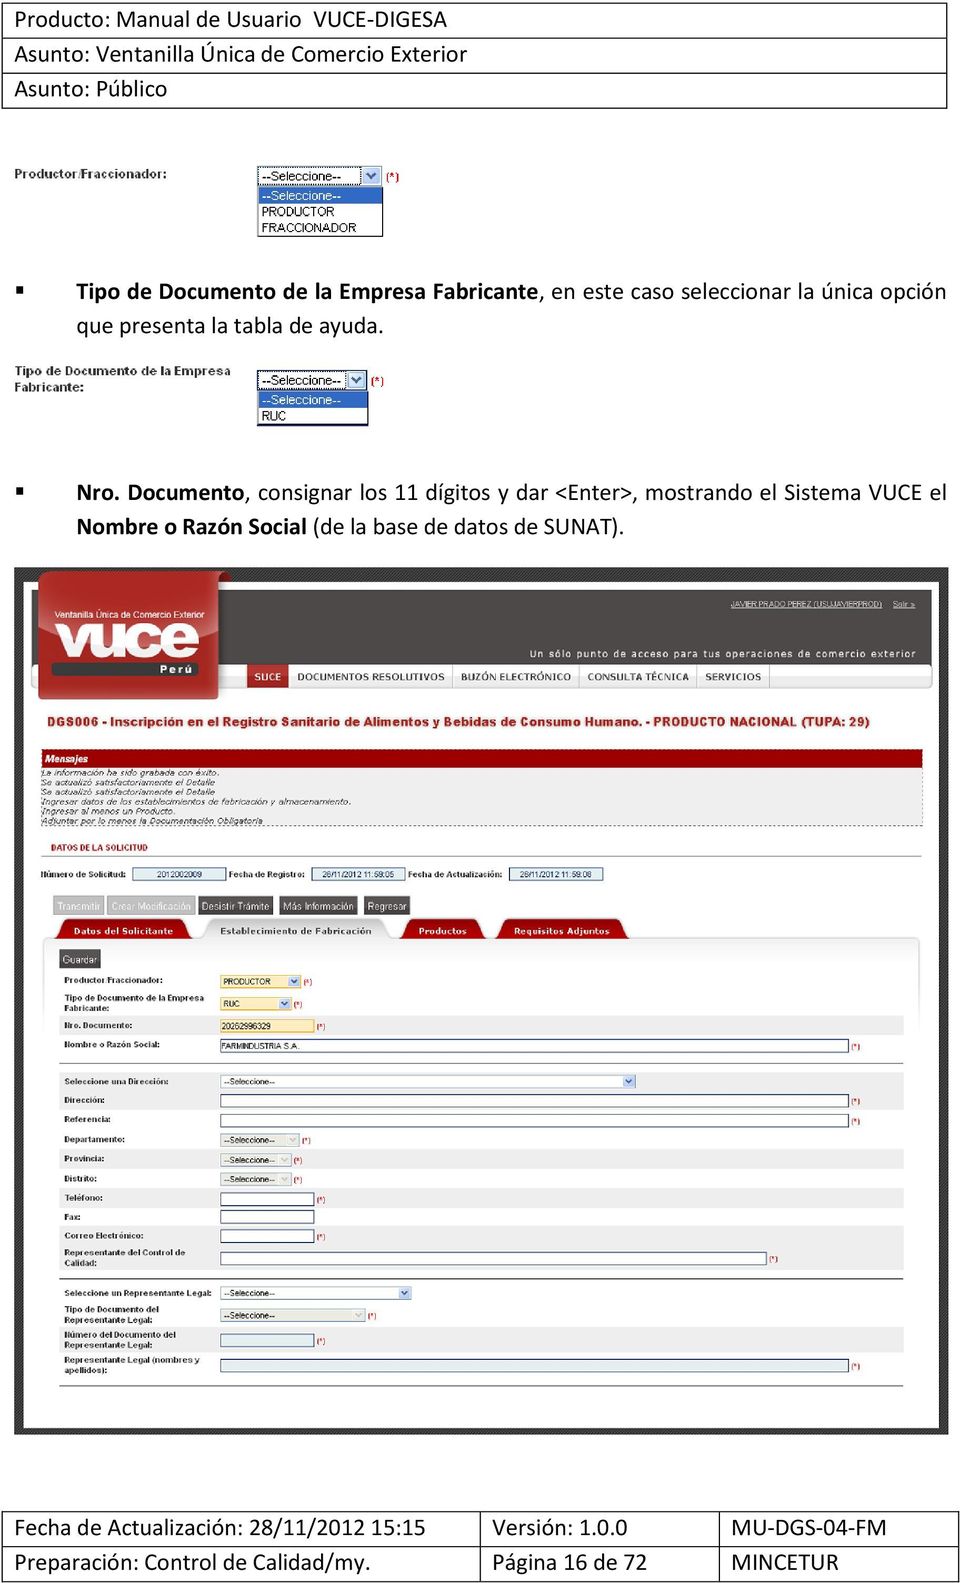 Documento, consignar los 11 dígitos y dar <Enter>, mostrando el Sistema VUCE